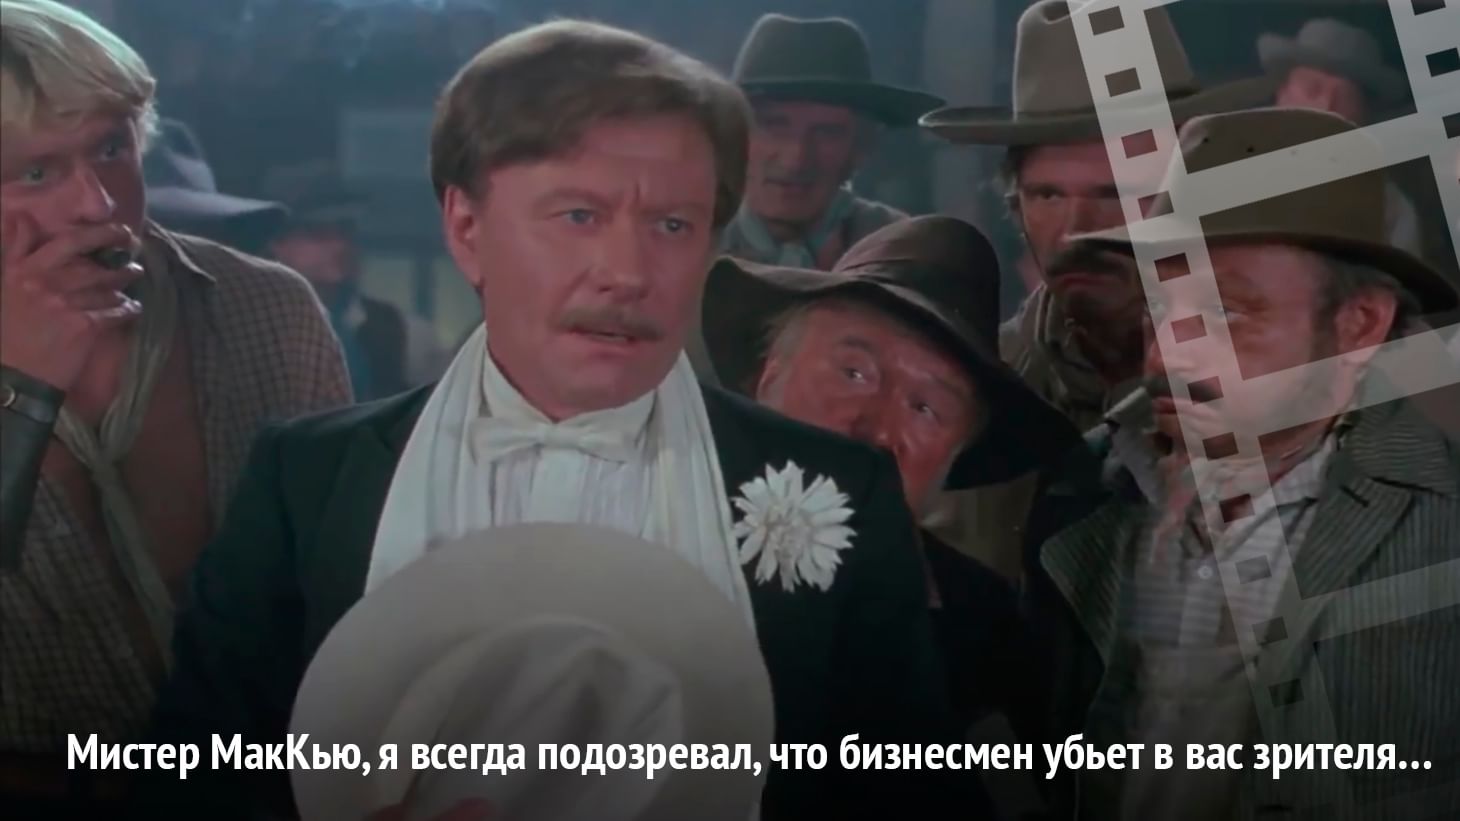 Человек с бульвара капуцинов актеры и роли фото и имена всех актеров из фильма